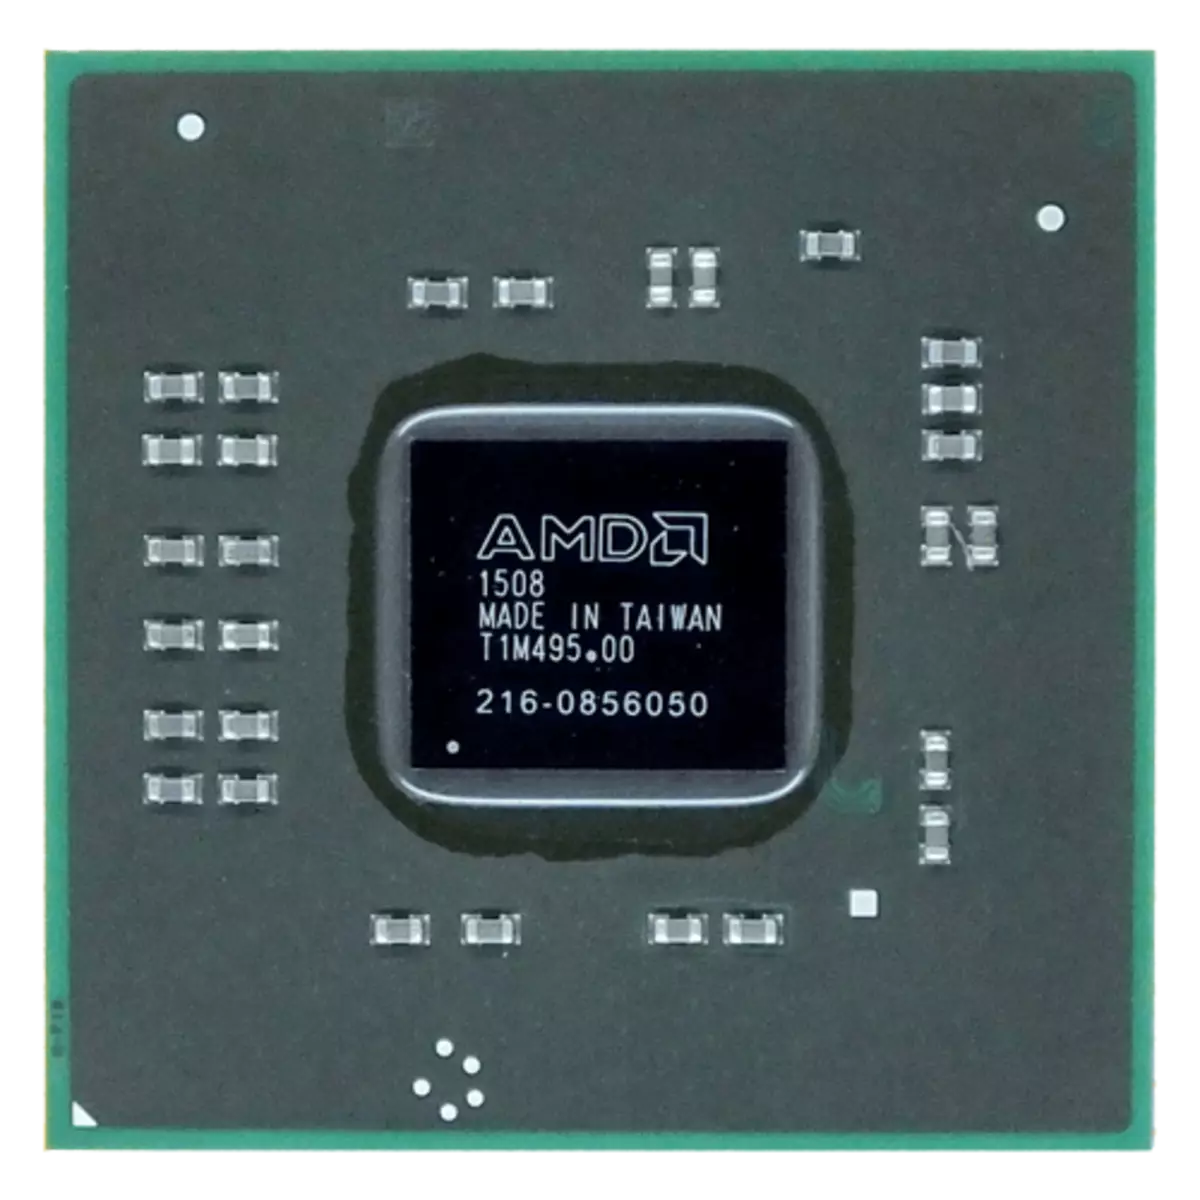 AMD Radeon R5 M230 용 드라이버